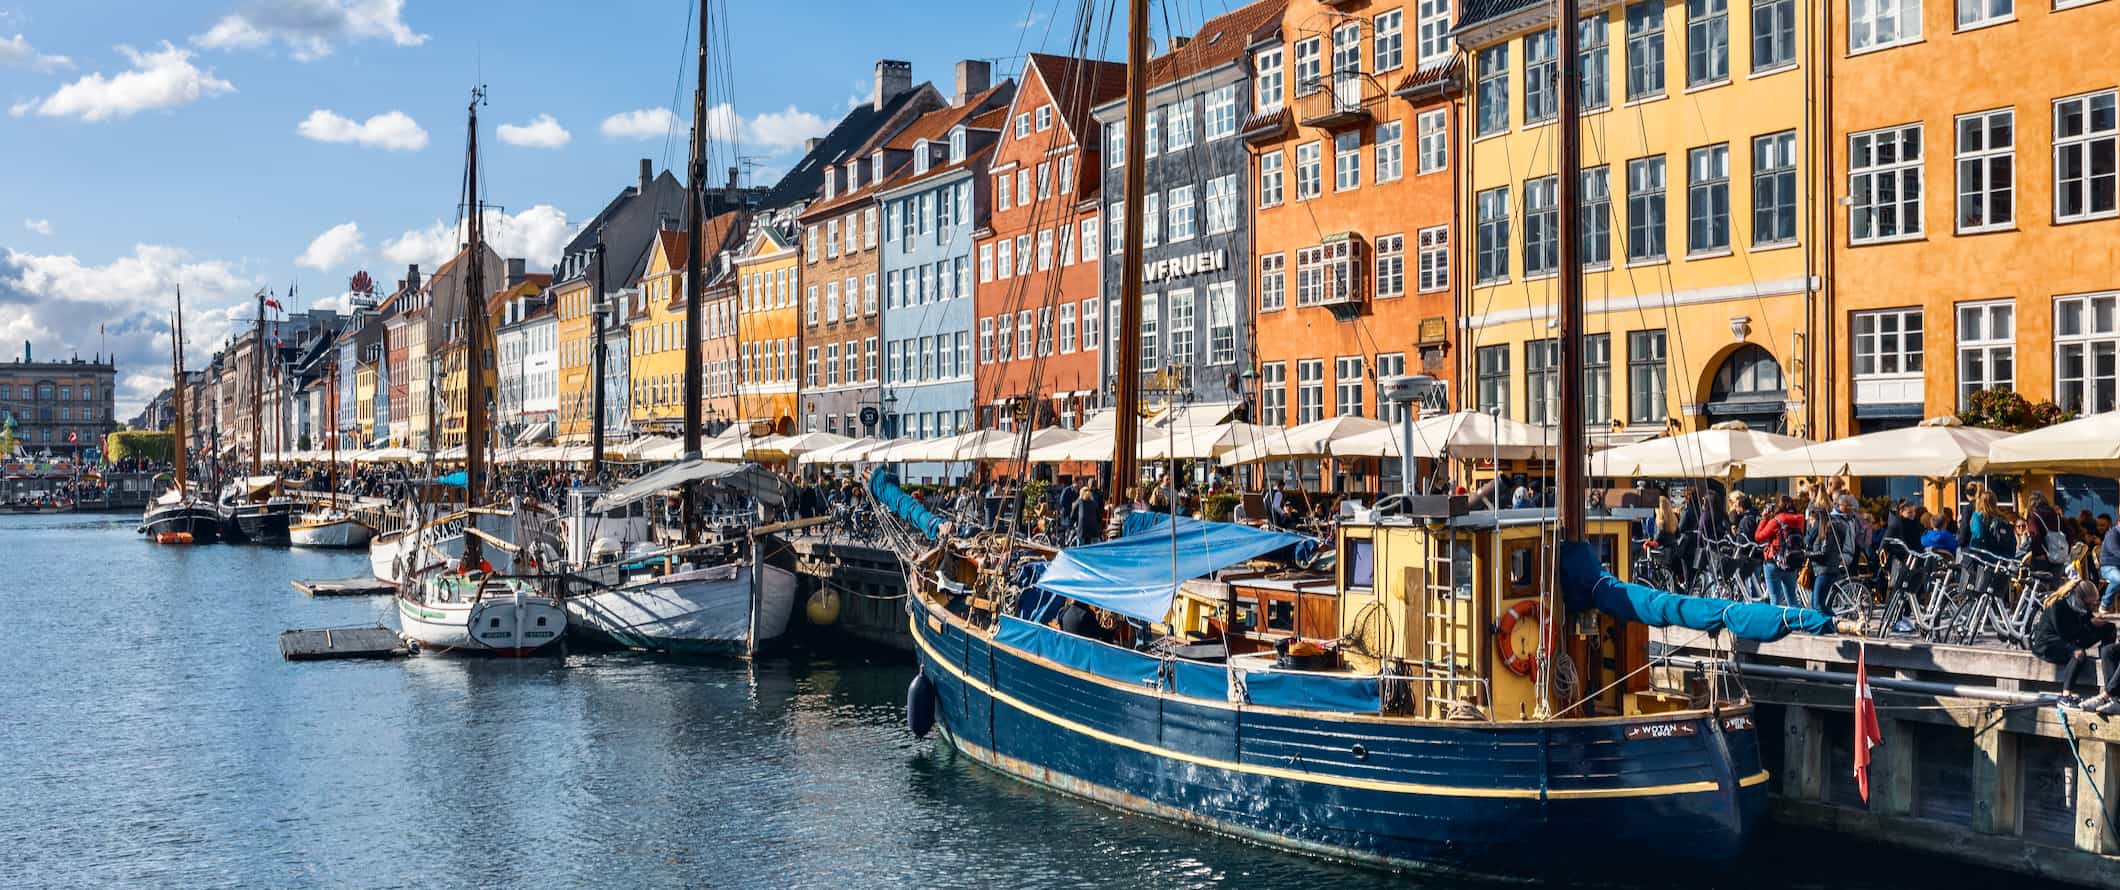 Famosas casas coloridas ao longo dos canais de Copenhague, Dinamarca, no verão